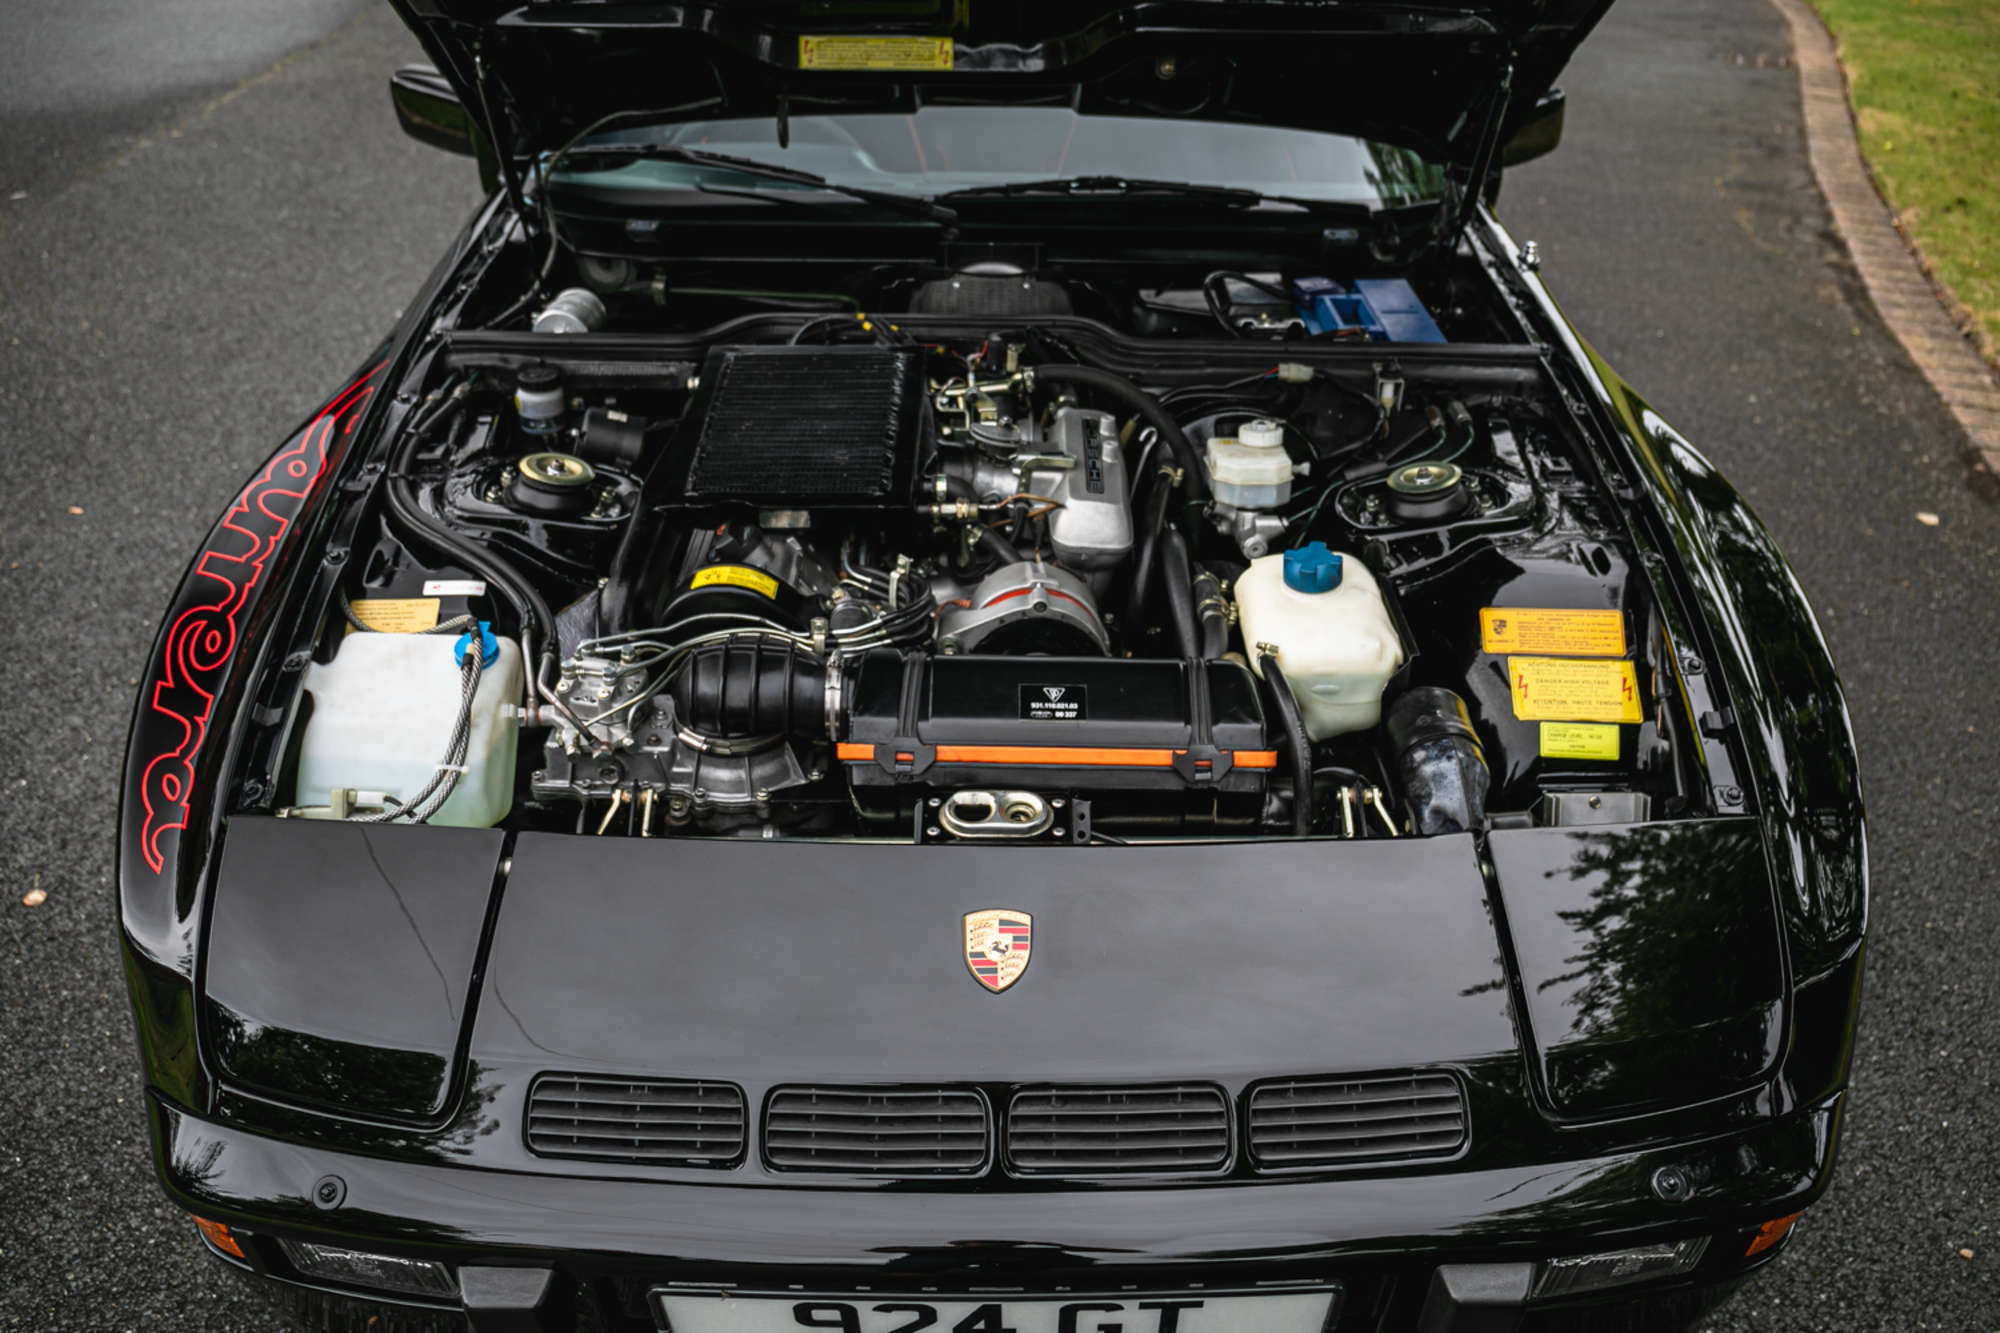 1981 Porsche 924 Carrera GT engine